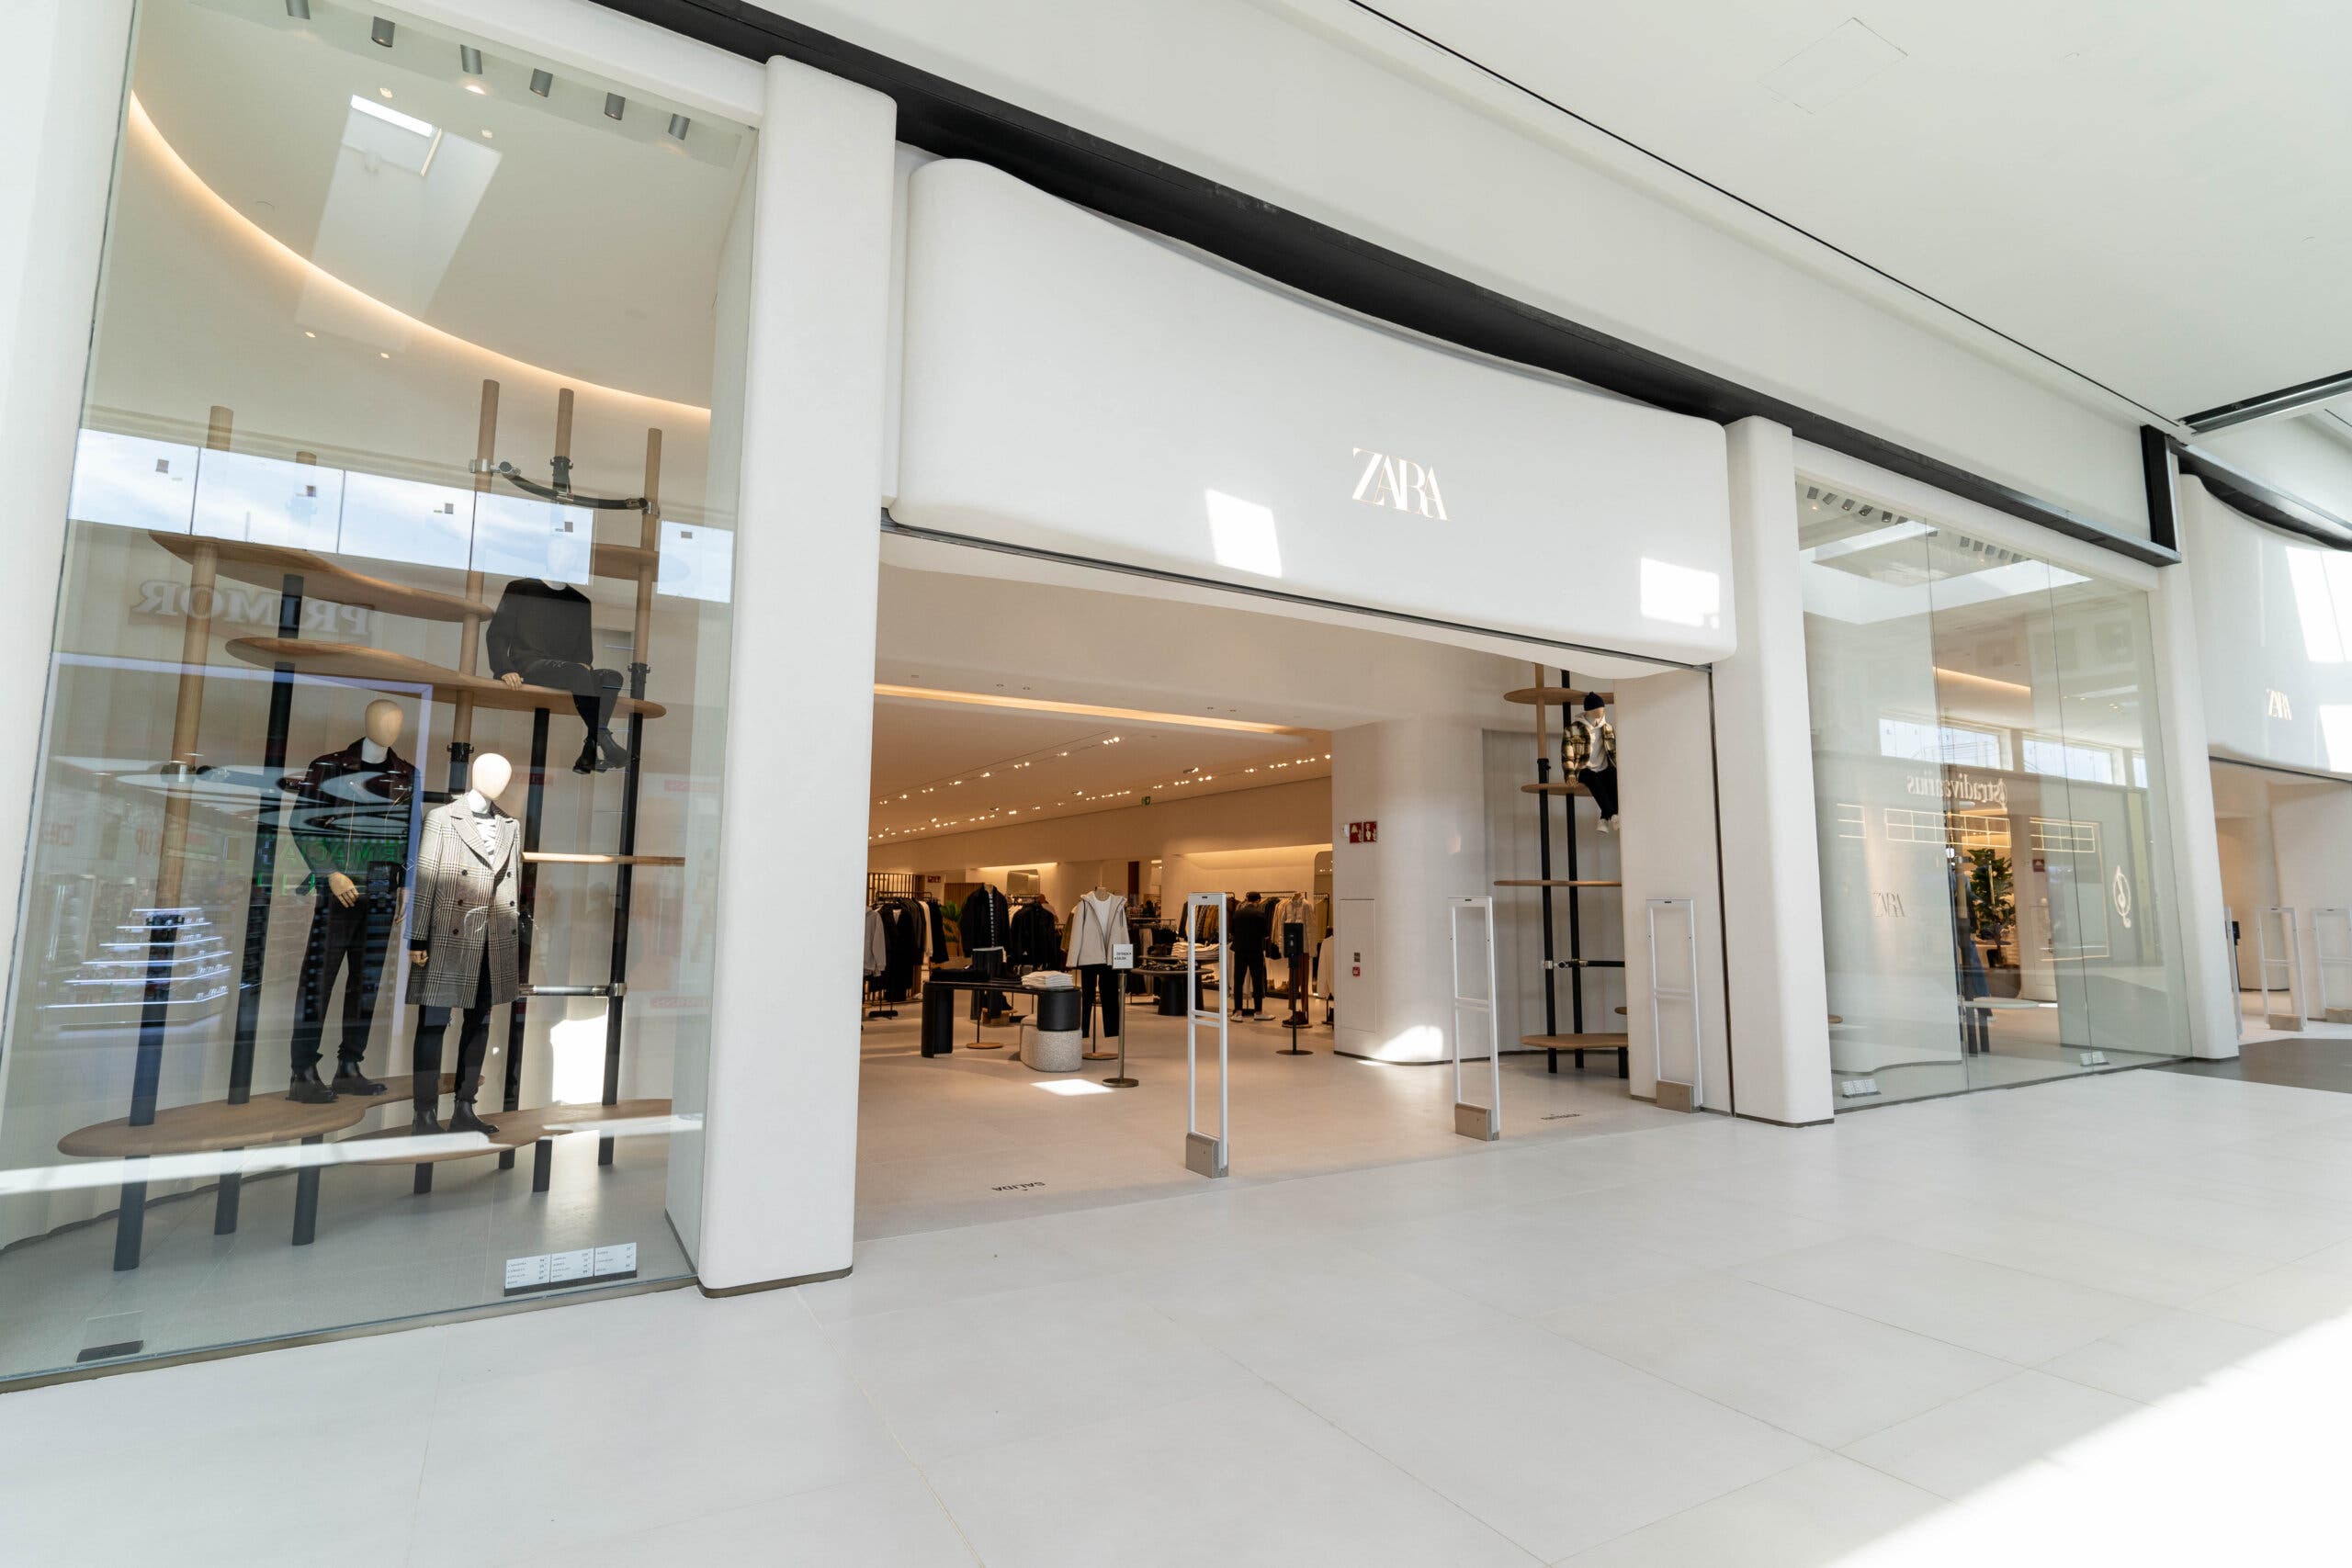 Inaugurada la nueva tienda de Zara en de MiraCorredor